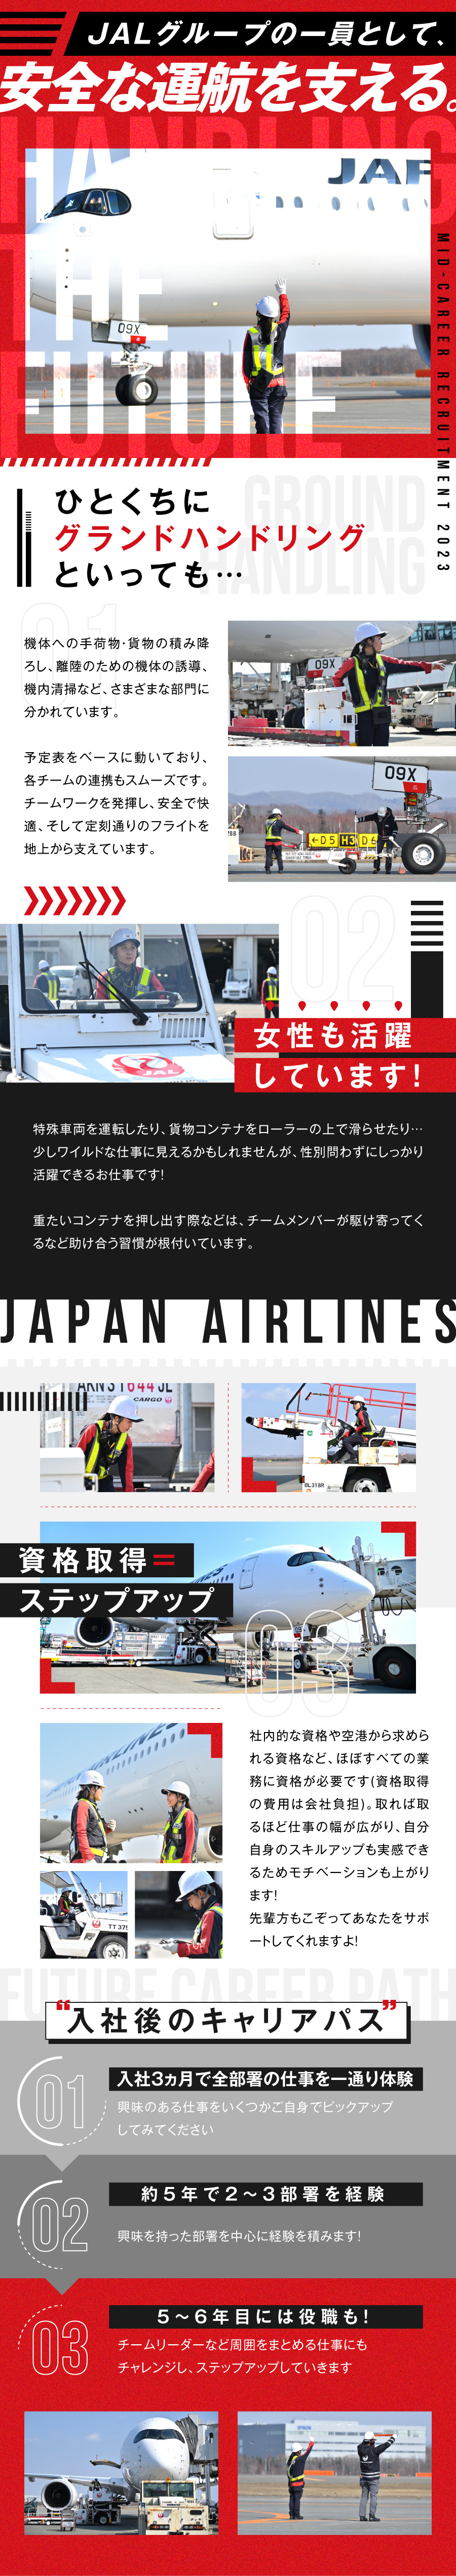 株式会社JALグランドサービス札幌からのメッセージ